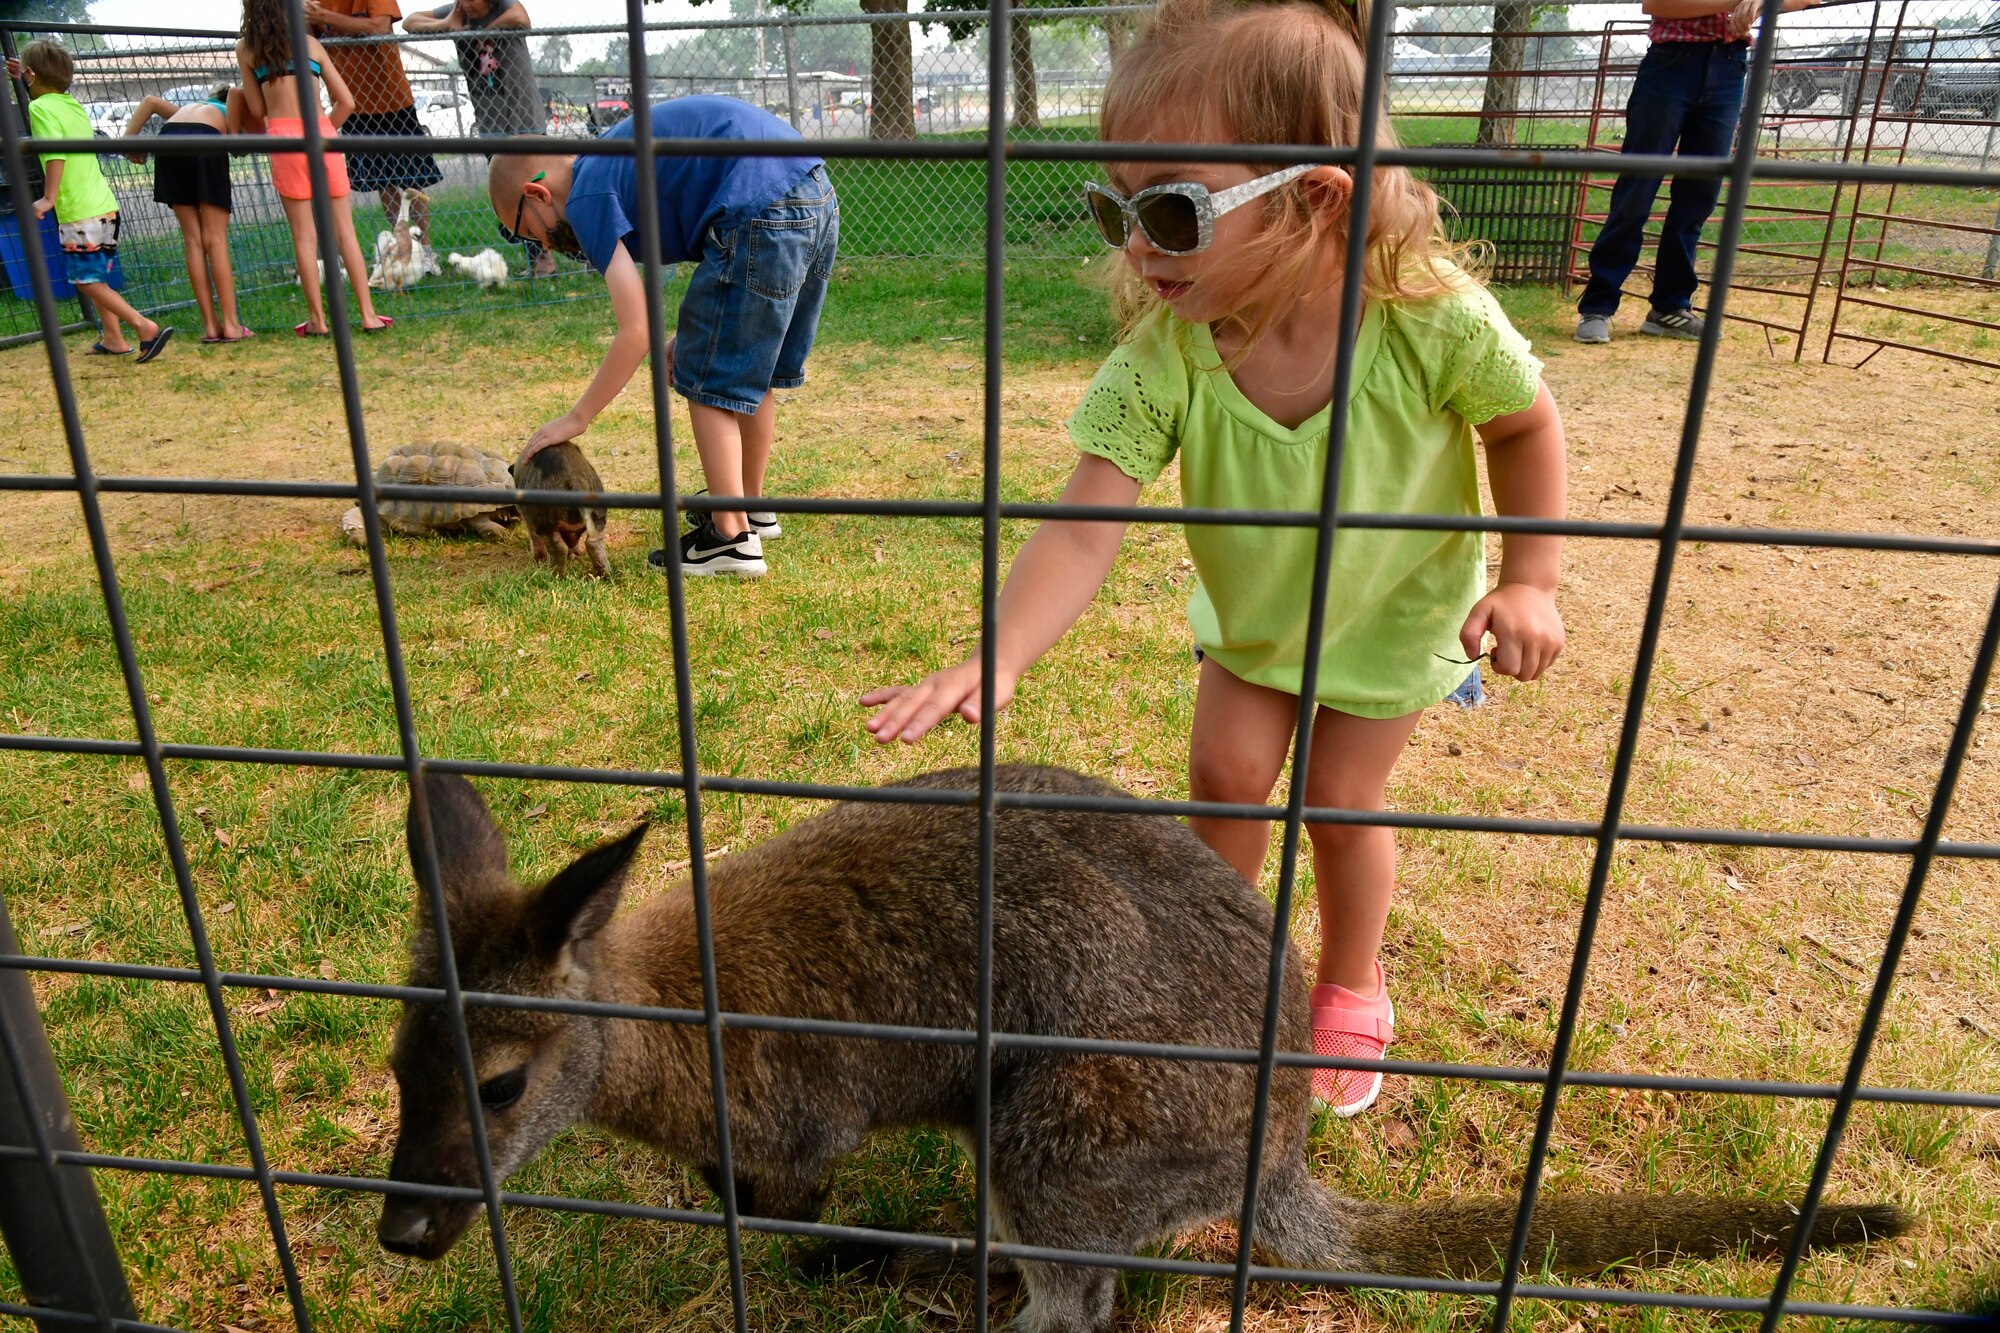 Aubrey Detillion pets a baby kangaroo inside a wired pen.